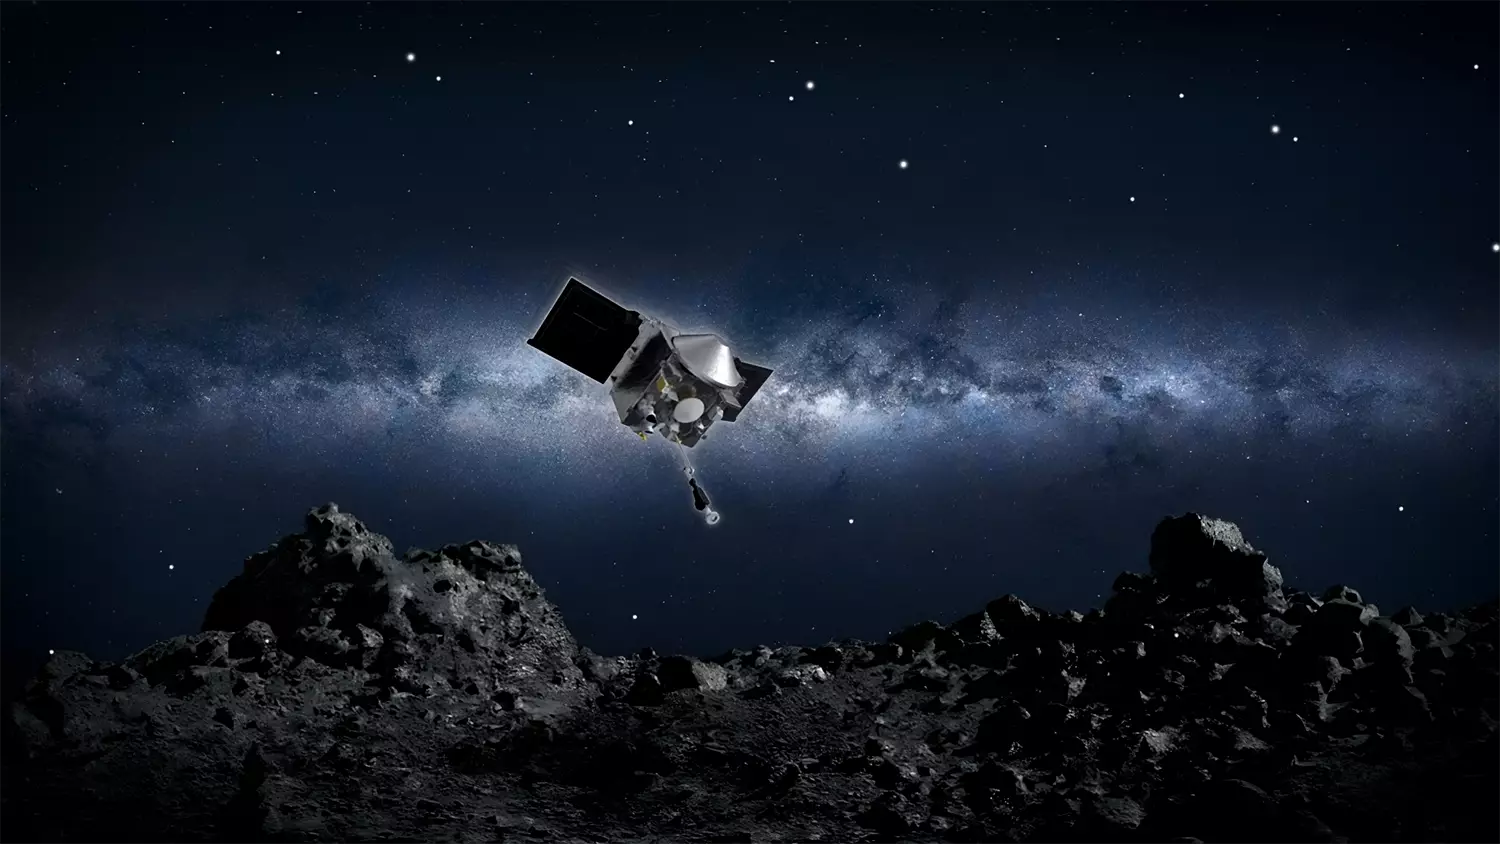 La mission OSIRIS-REx de la NASA revient triomphalement et offre des indices sur nos origines solaires